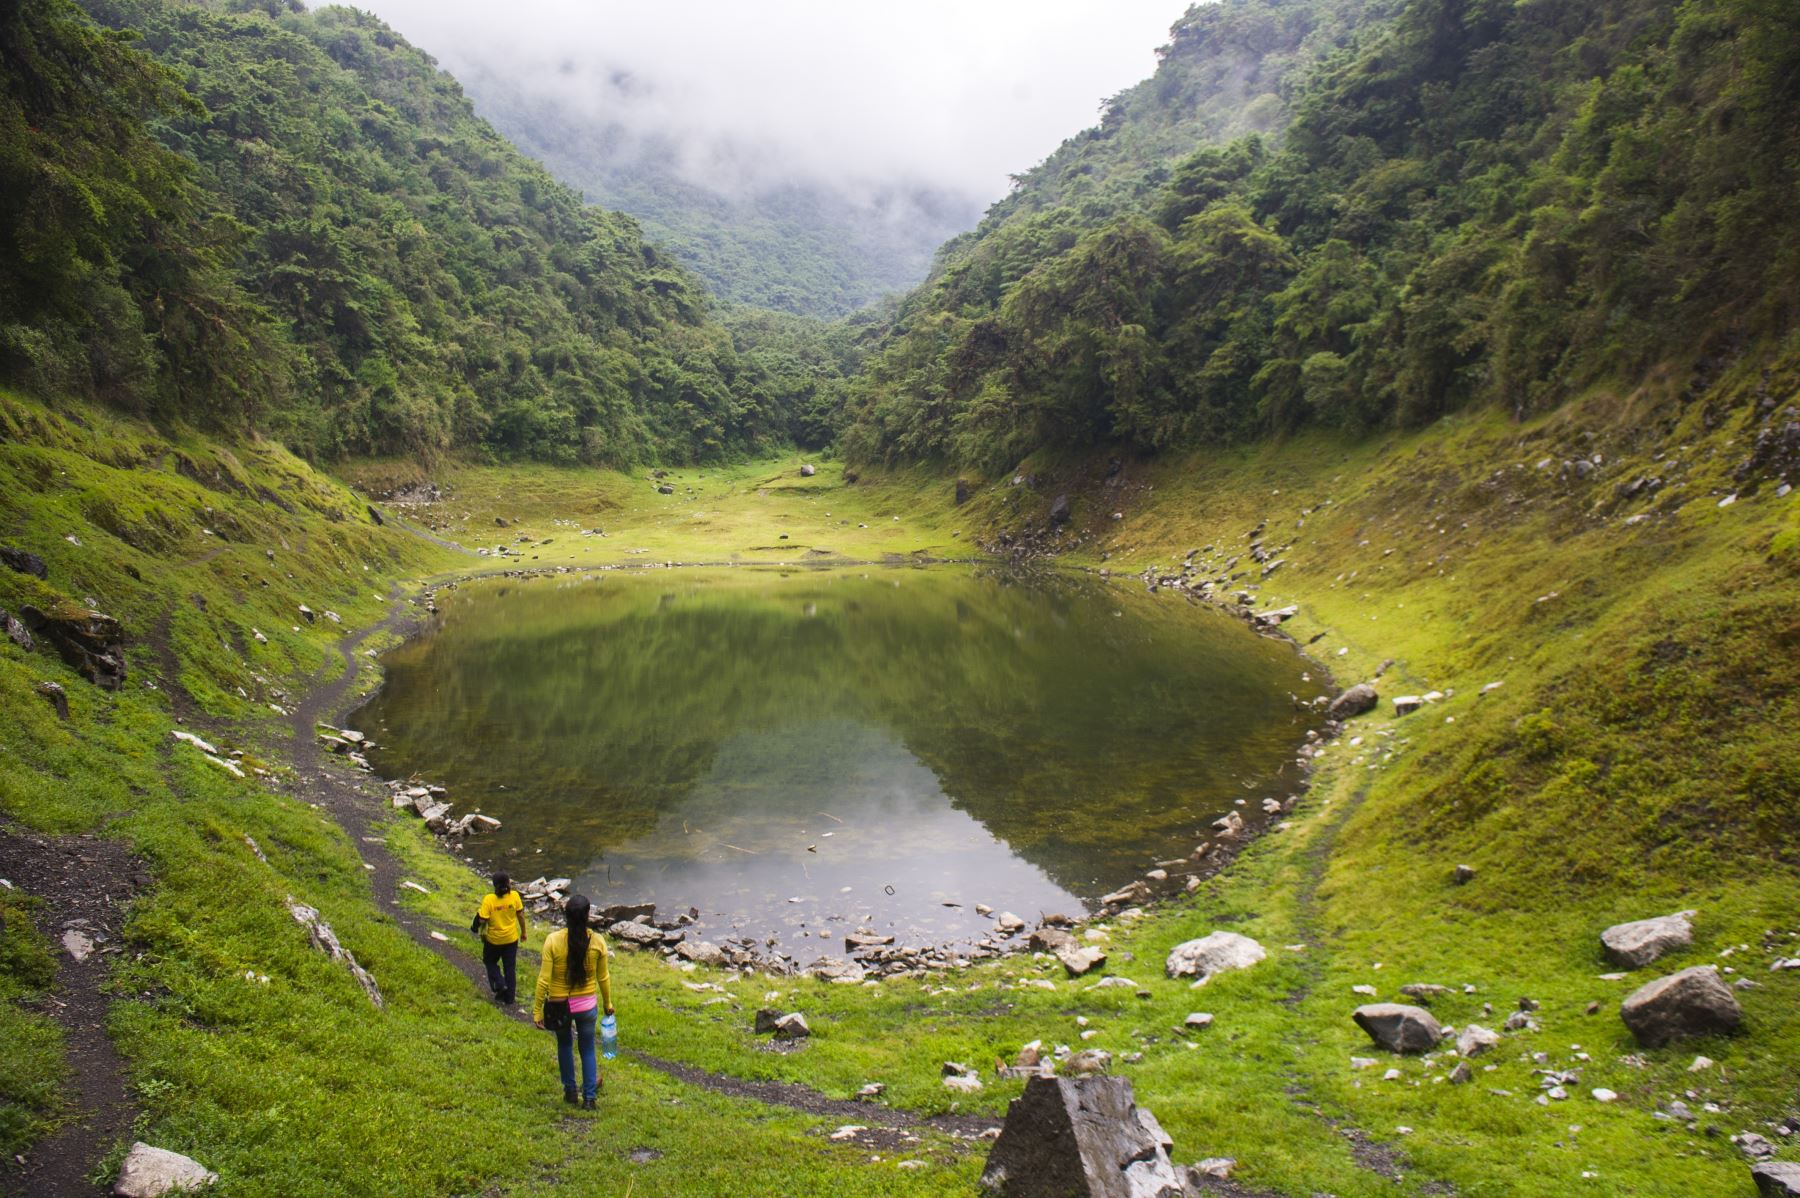 Conocido como la “Isla biológica de los Andes”, el Santuario Nacional Ampay celebrará este 23 de julio su 35 aniversario de creación como área protegida por el Estado. ANDINA/Difusión